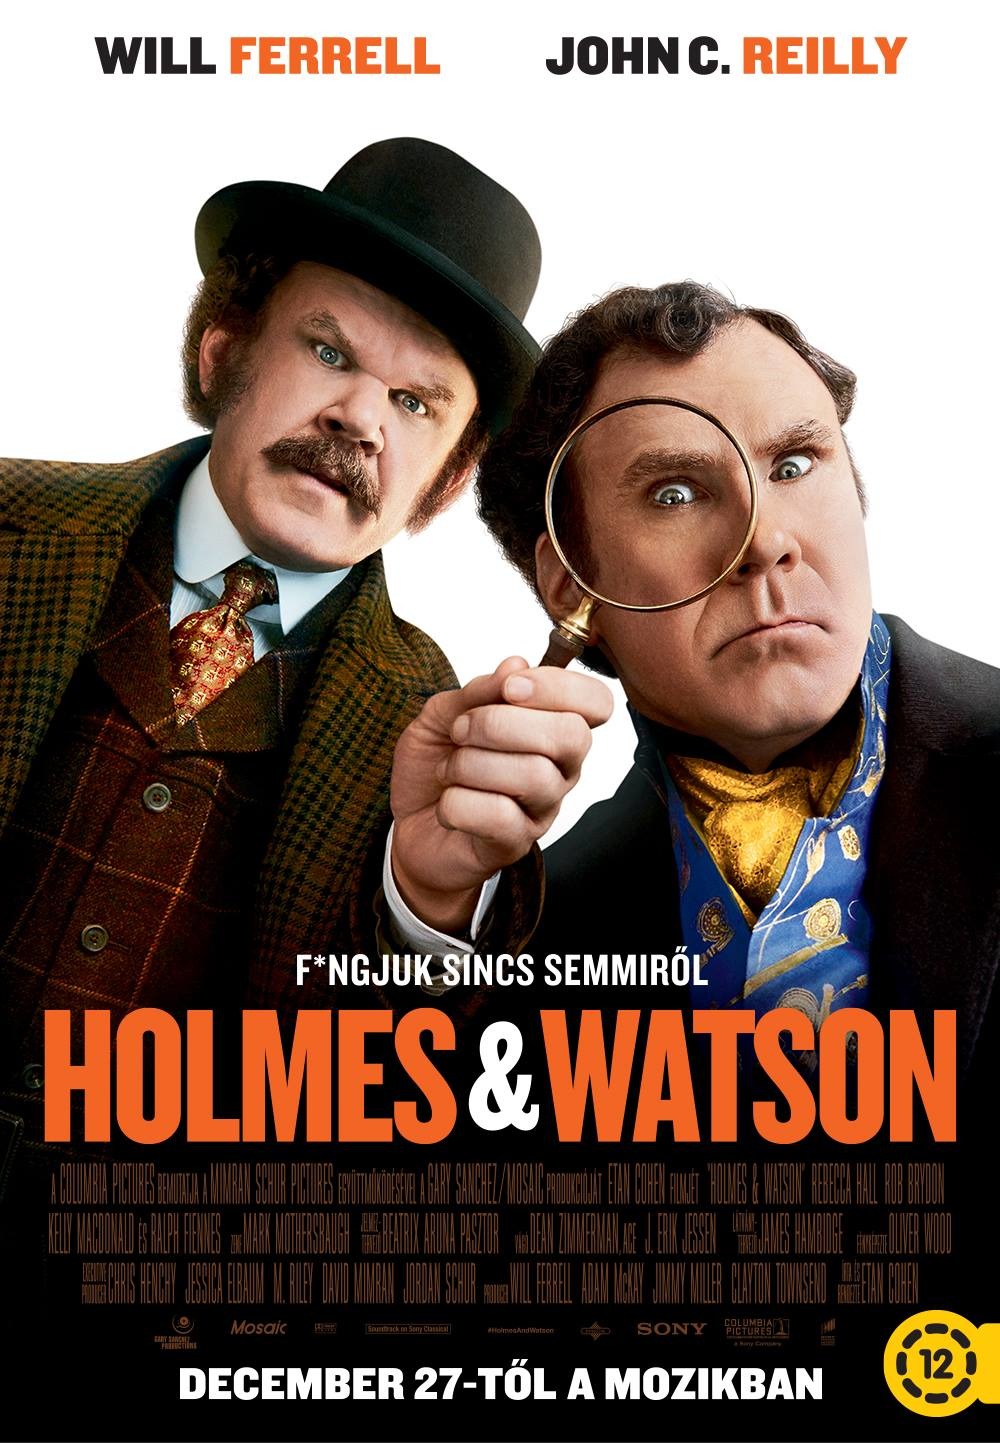 Постер - Холмс & Ватсон: 1000x1443 / 267.99 Кб